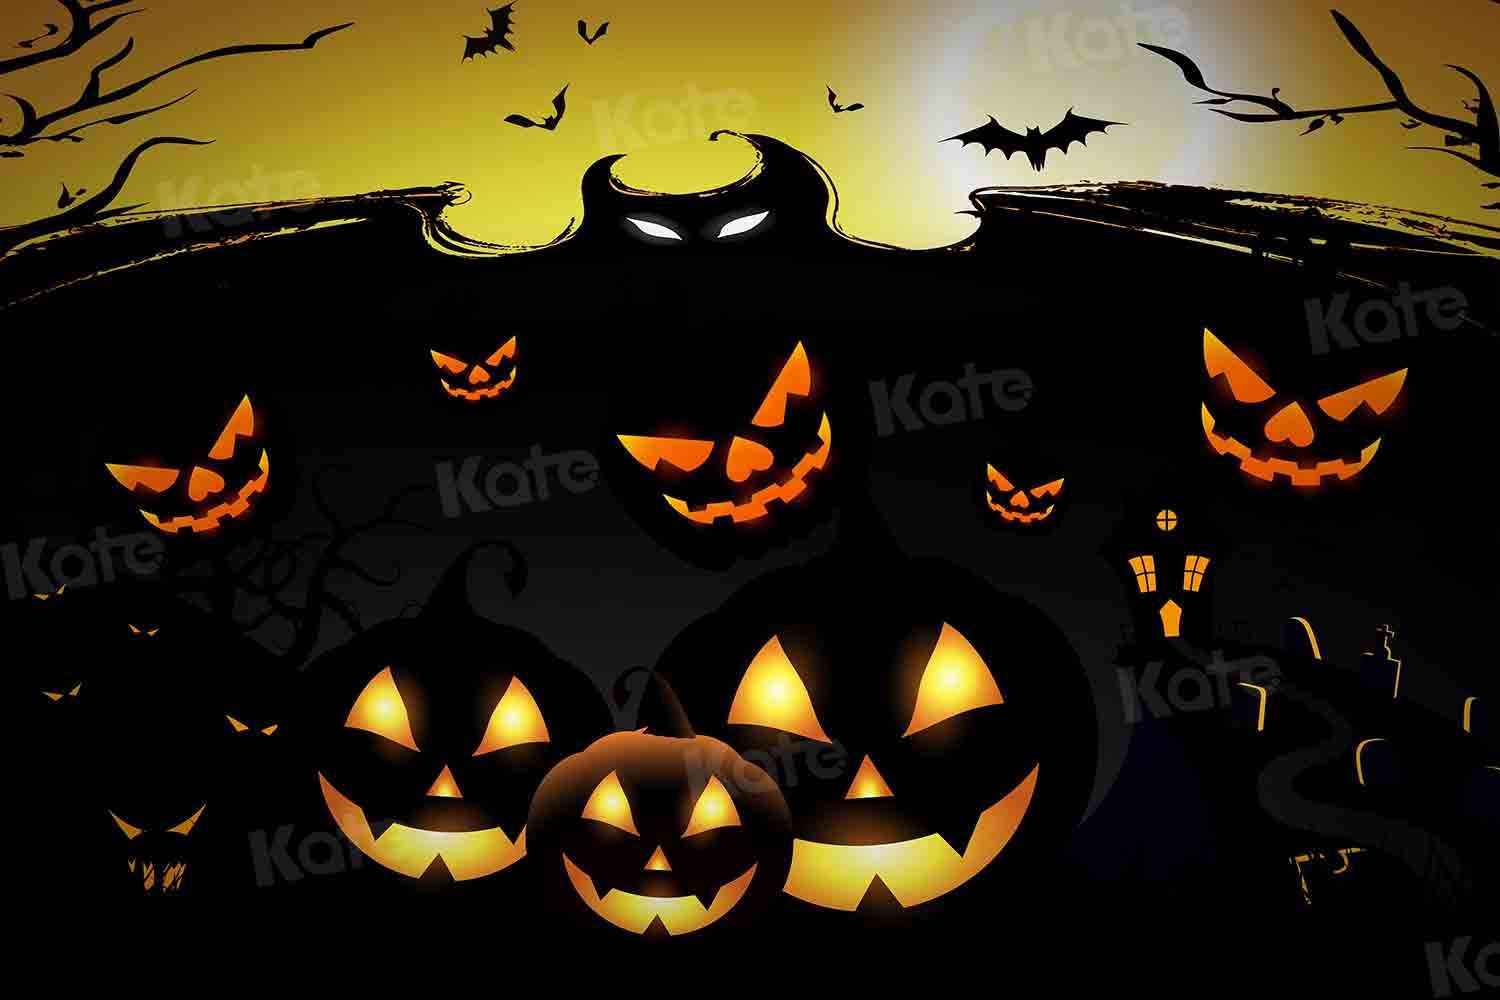 Kate Halloween Hintergrund Kürbis für Fotografie von Chain Photography